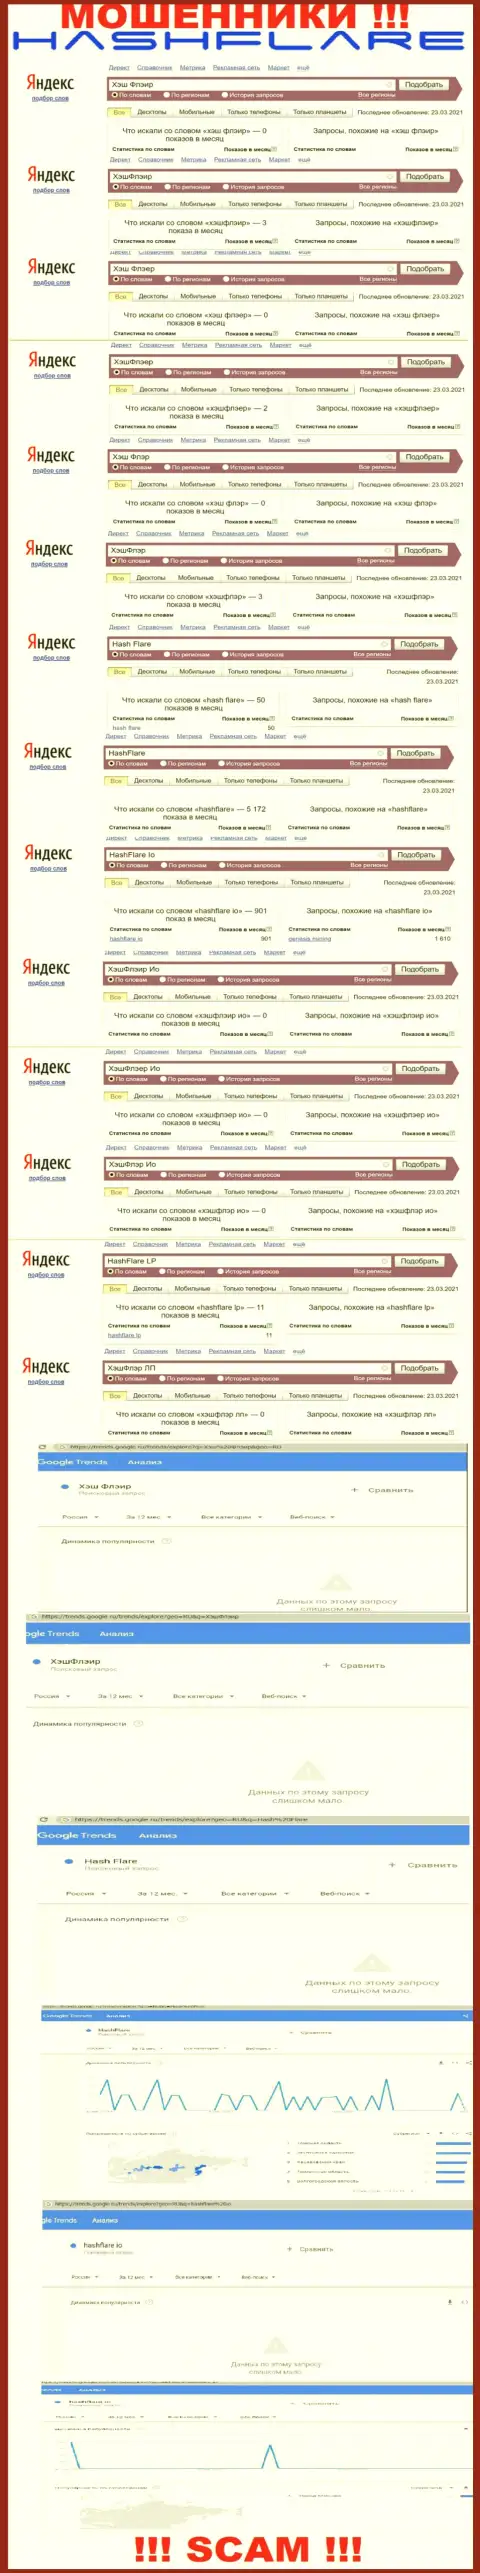 Количество онлайн-запросов в поисковиках интернета по бренду мошенников HashFlare